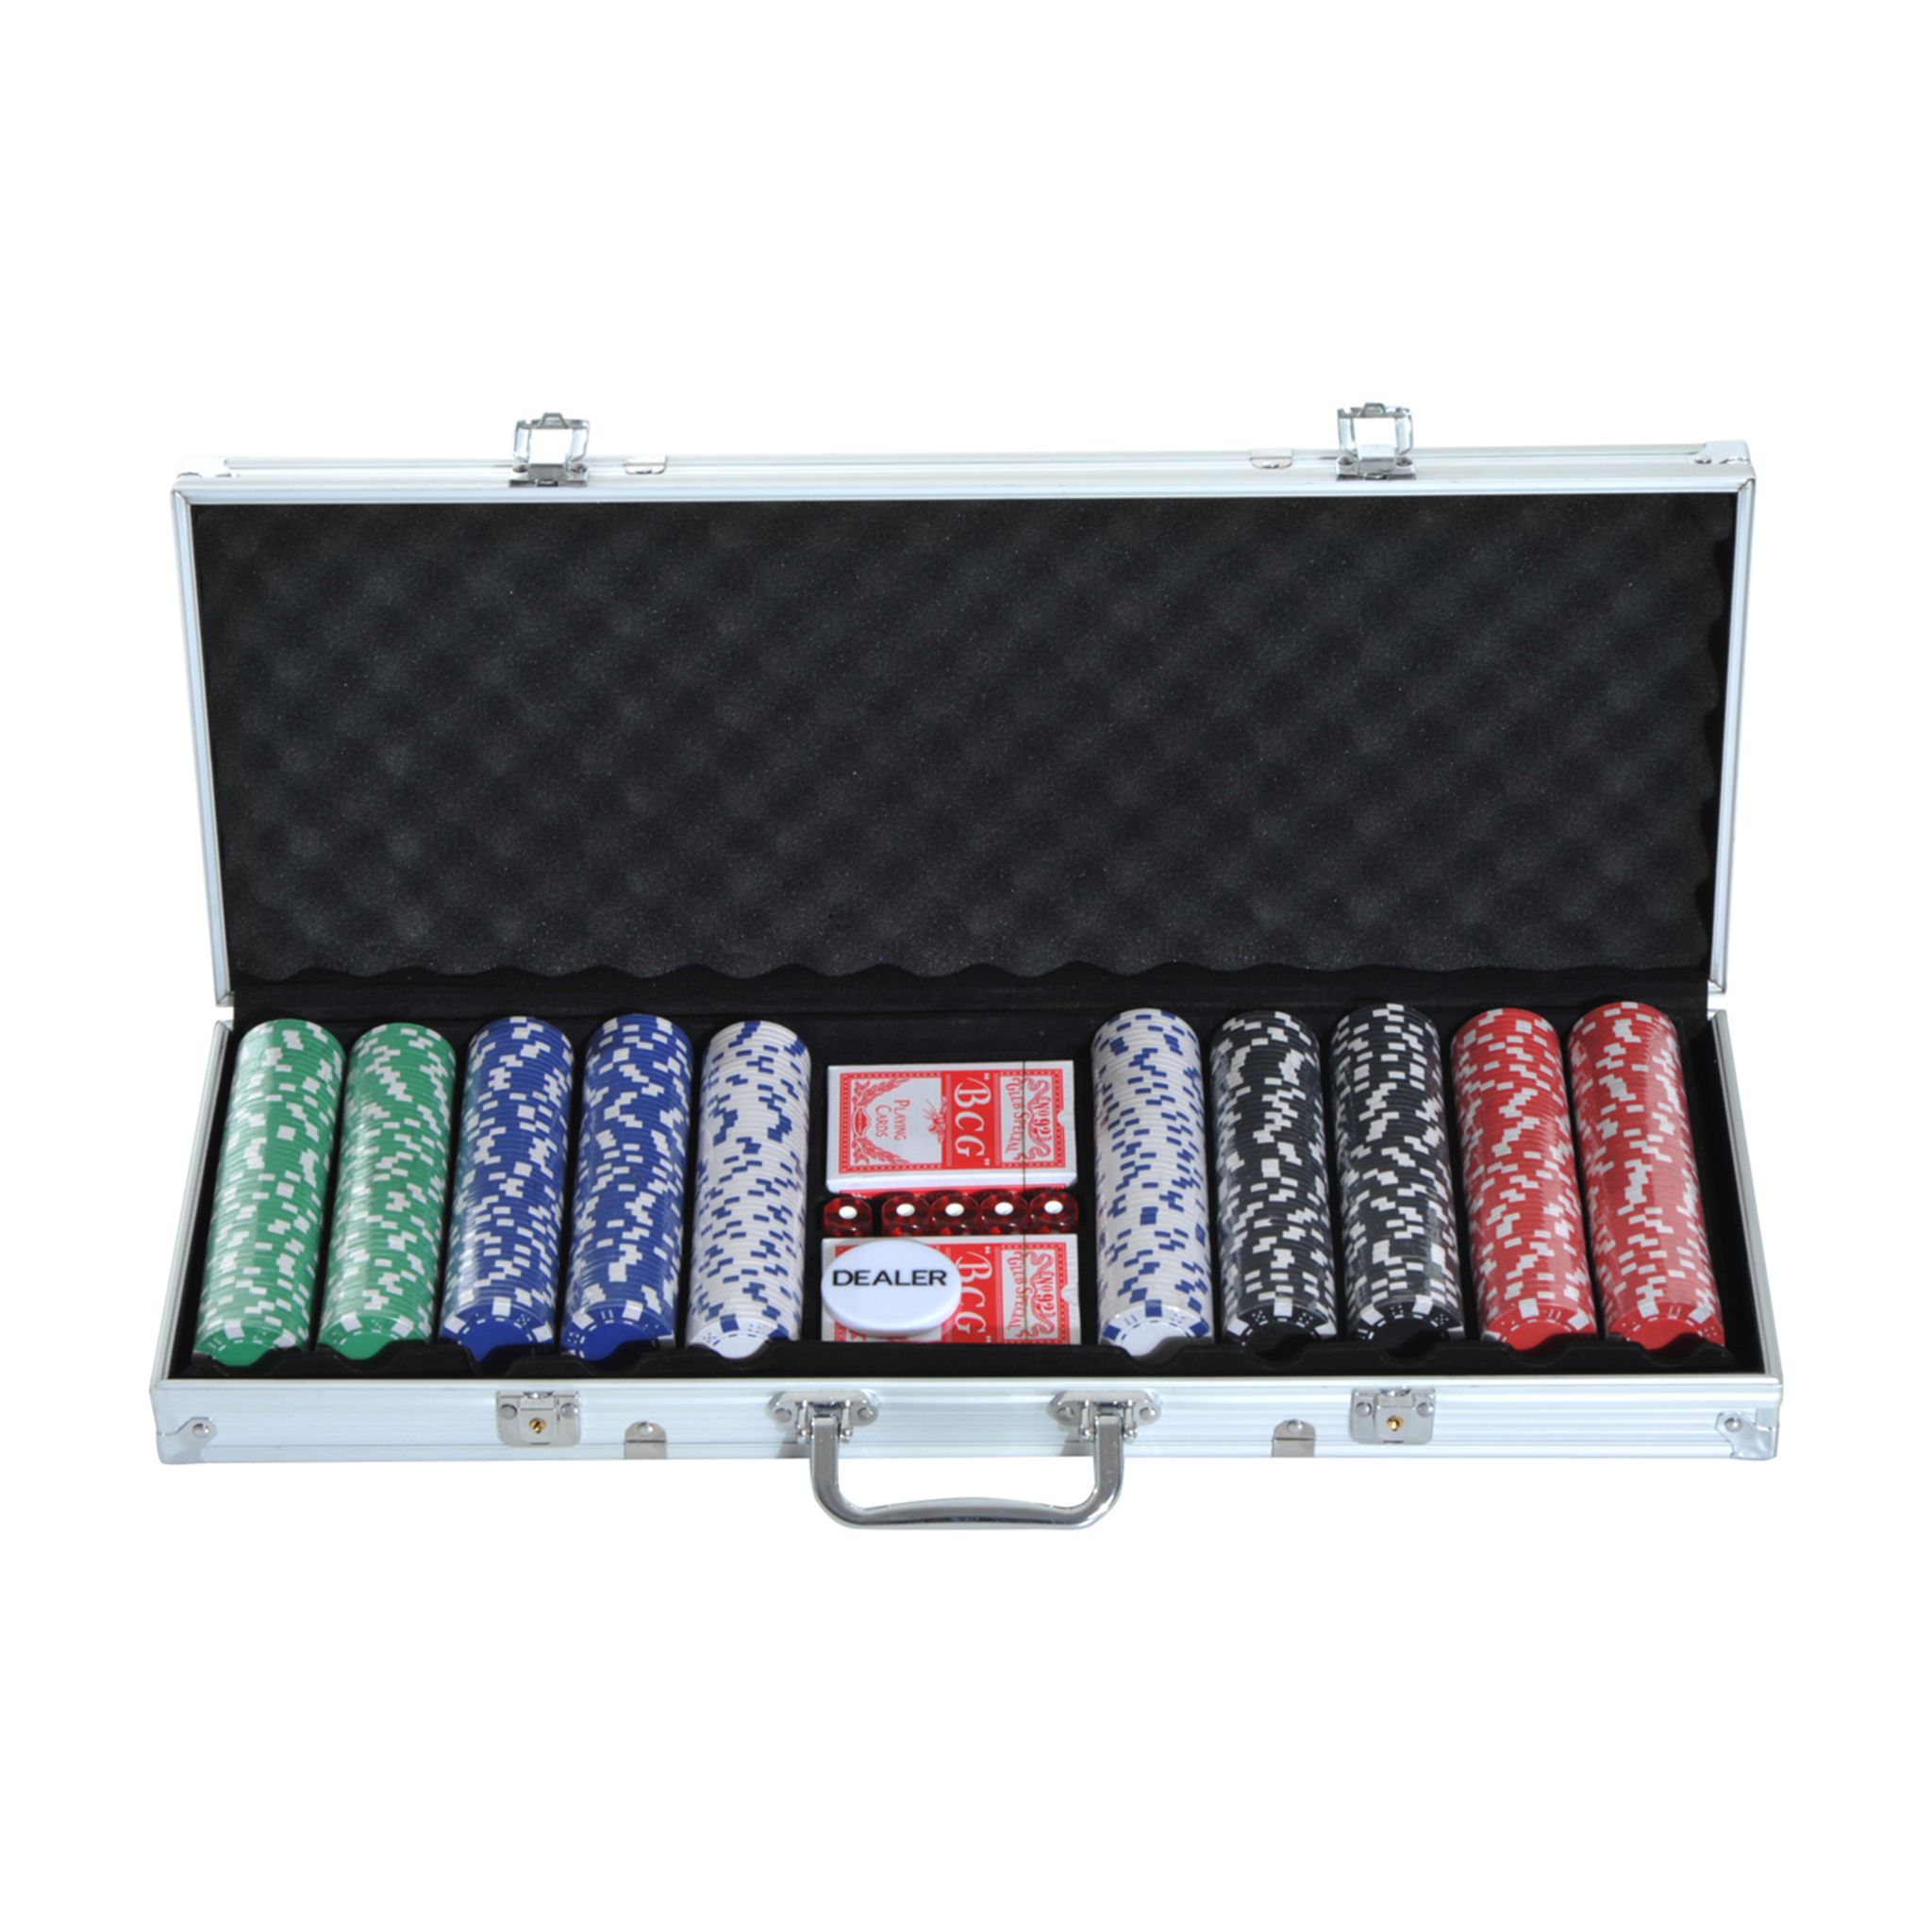 HOMCOM Mallette professionnelle de Poker 500 jetons 2 jeux de cartes 5 dés  bouton dealer 2 clés alu pas cher 